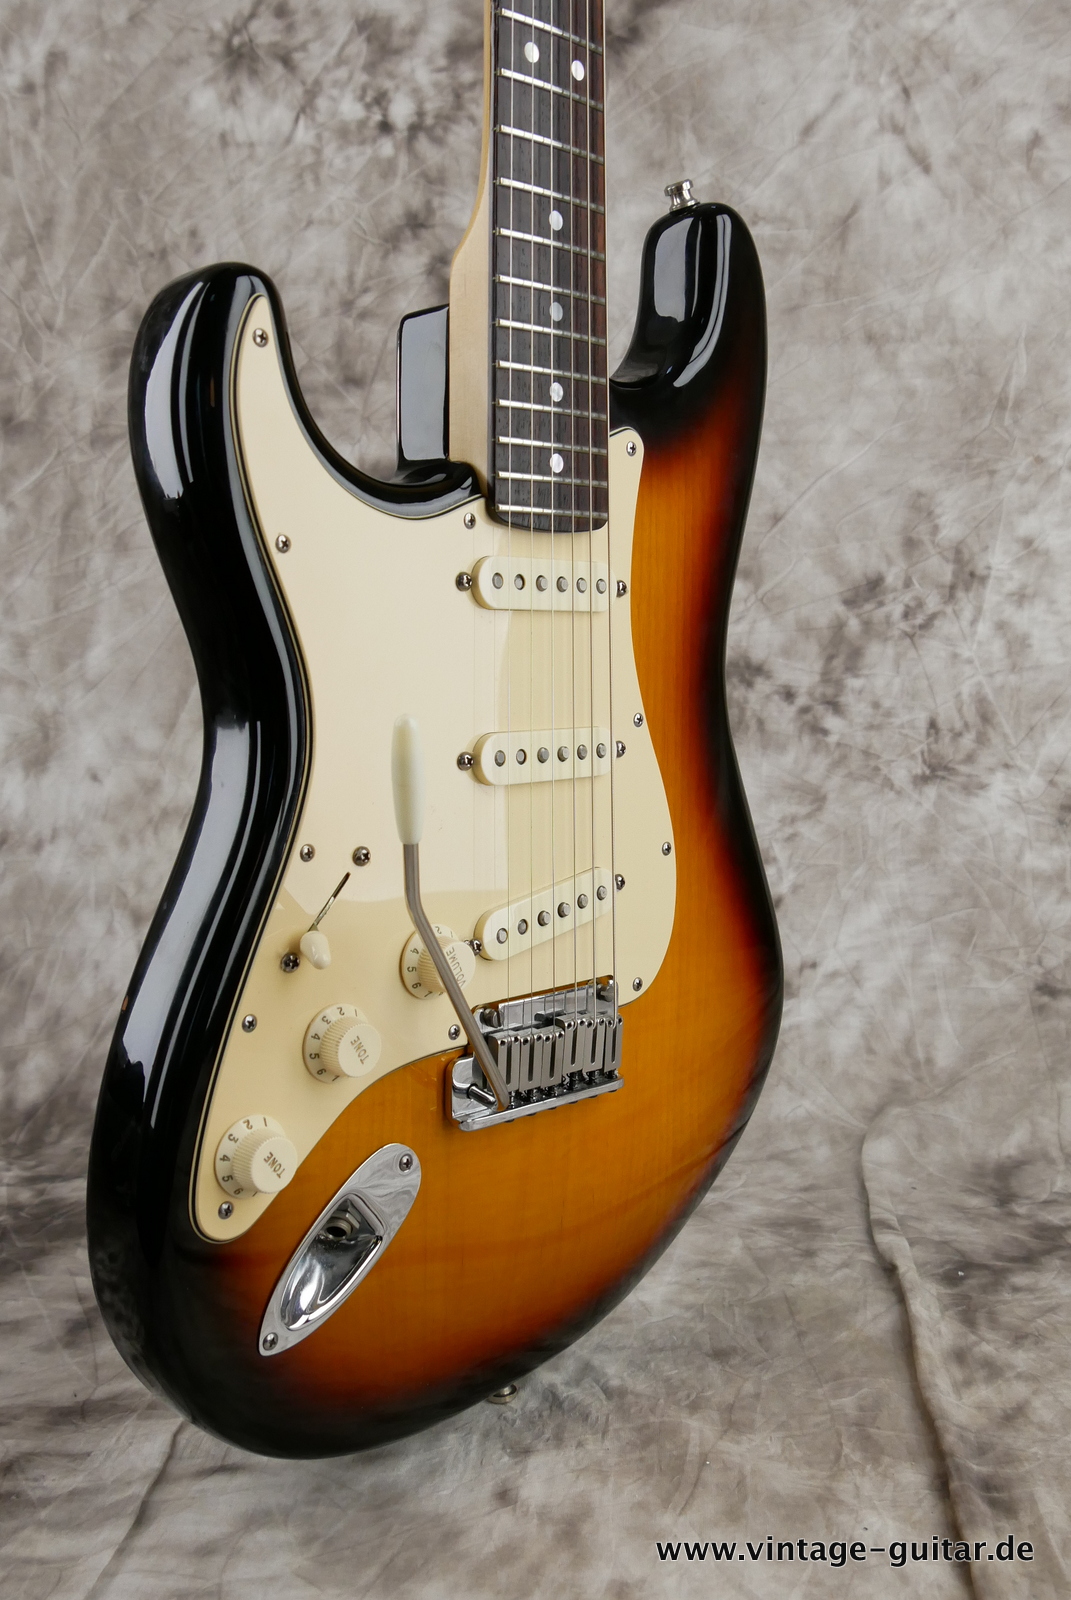 Fender_Stratocaster_American_Series_Diamond_Anniversary_60th_Left_handed_USA_sunburst-009.JPG